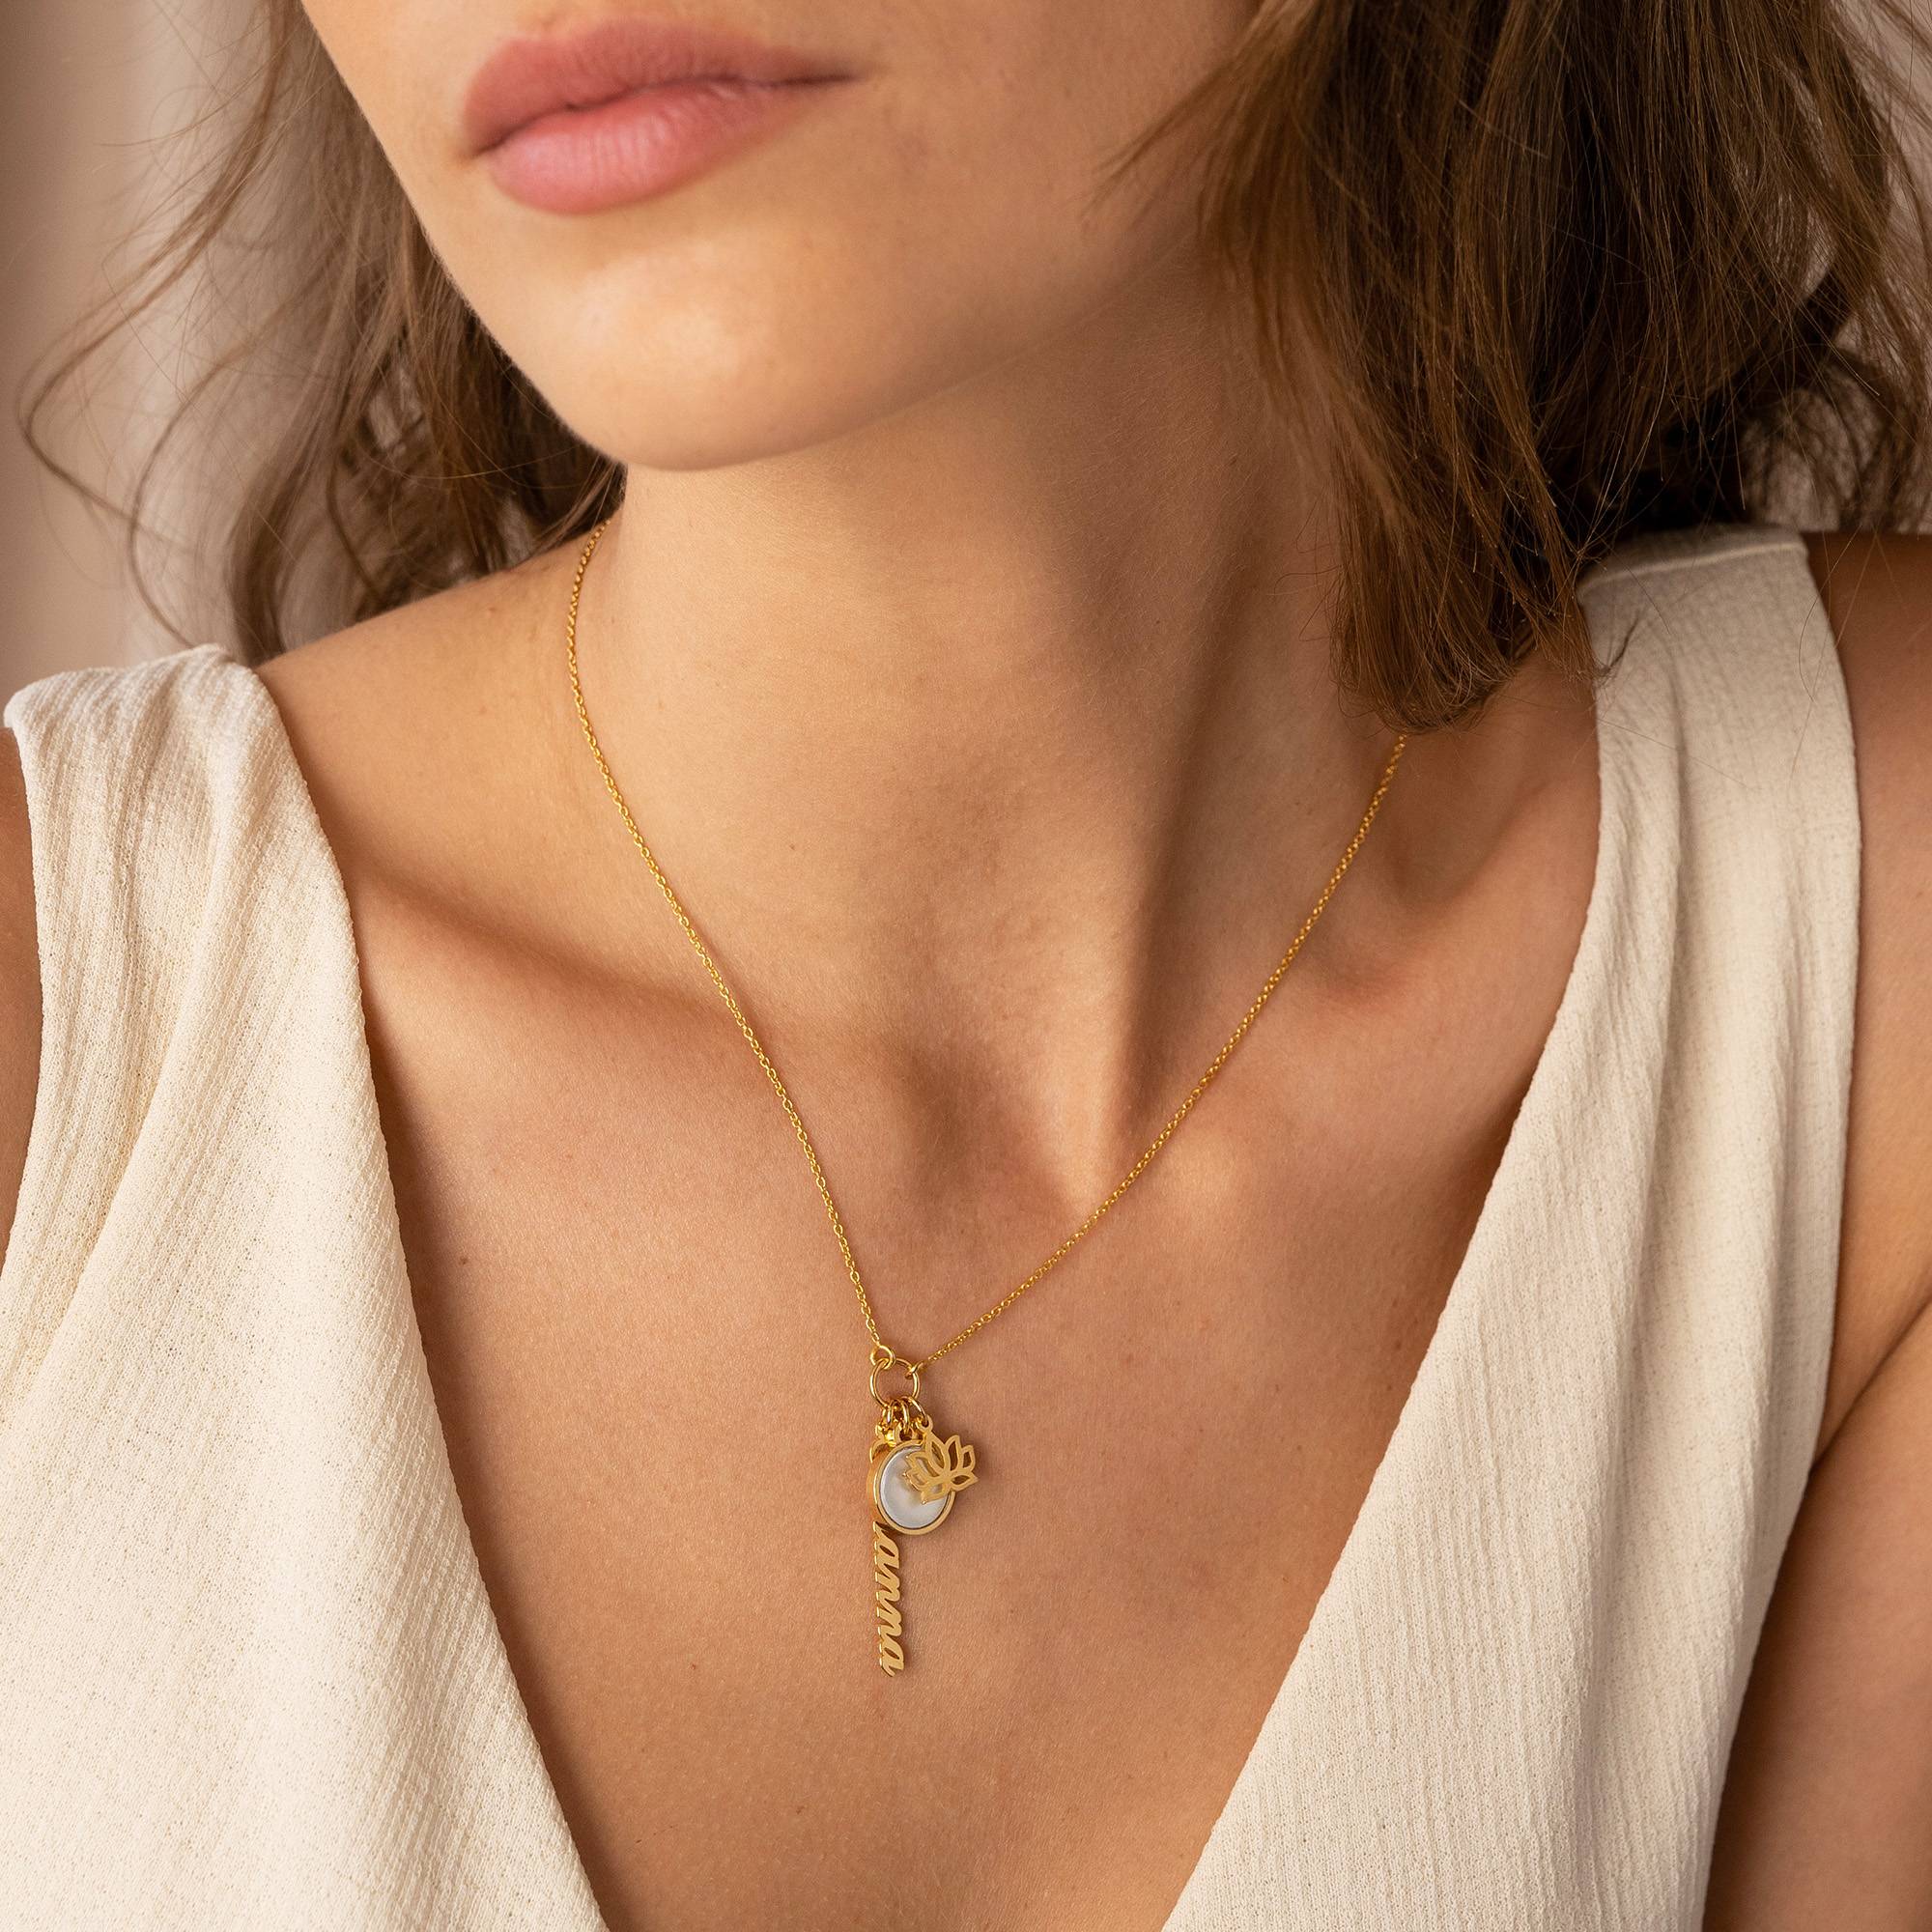 Collar de nombre simbólico con piedra semipreciosa en oro vermeil de 18 quilates-1 foto de producto